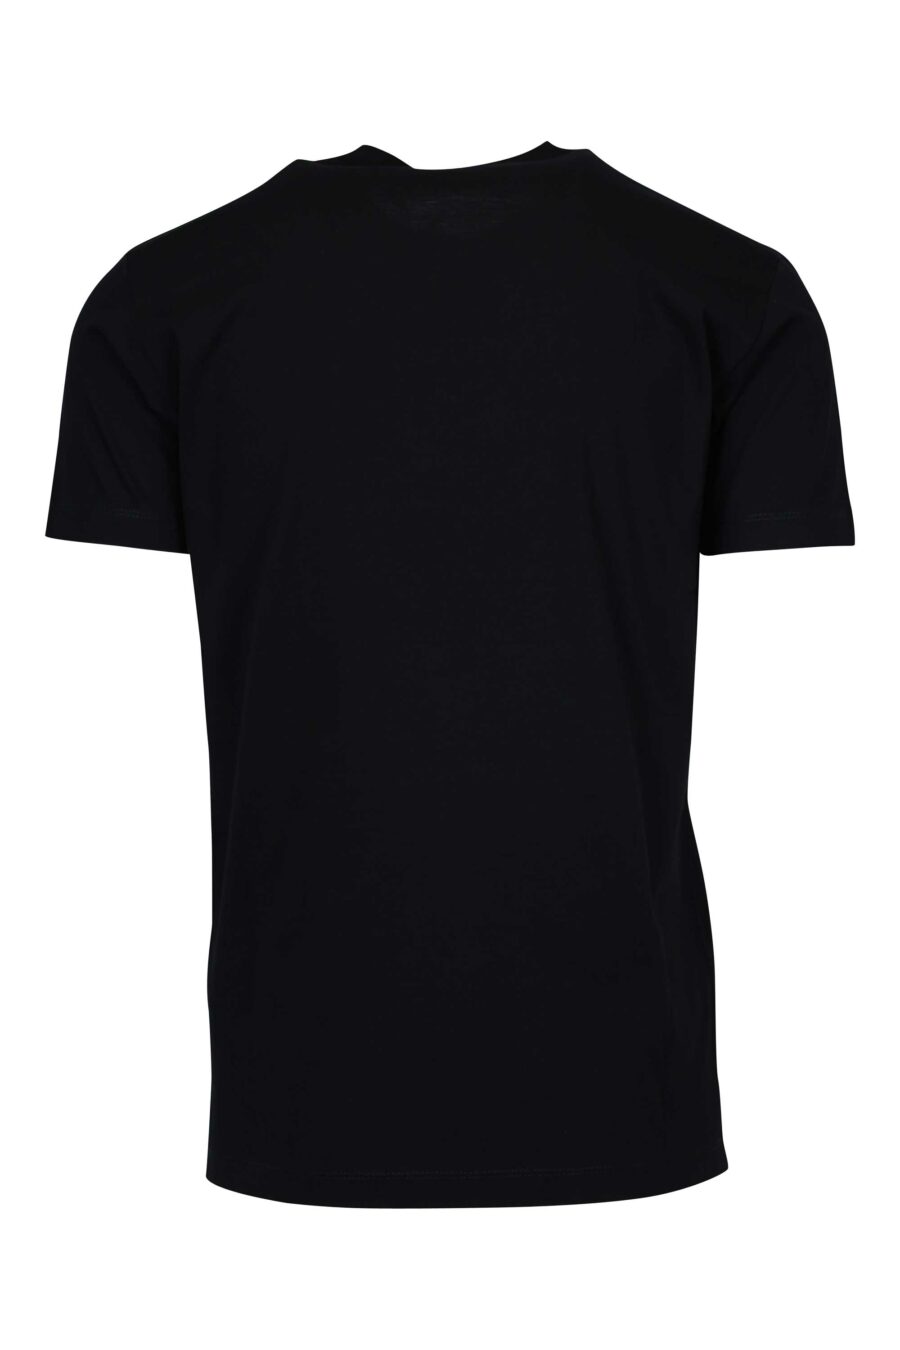 Camiseta negra con maxilogo multicolor retro - 8054148447502 1